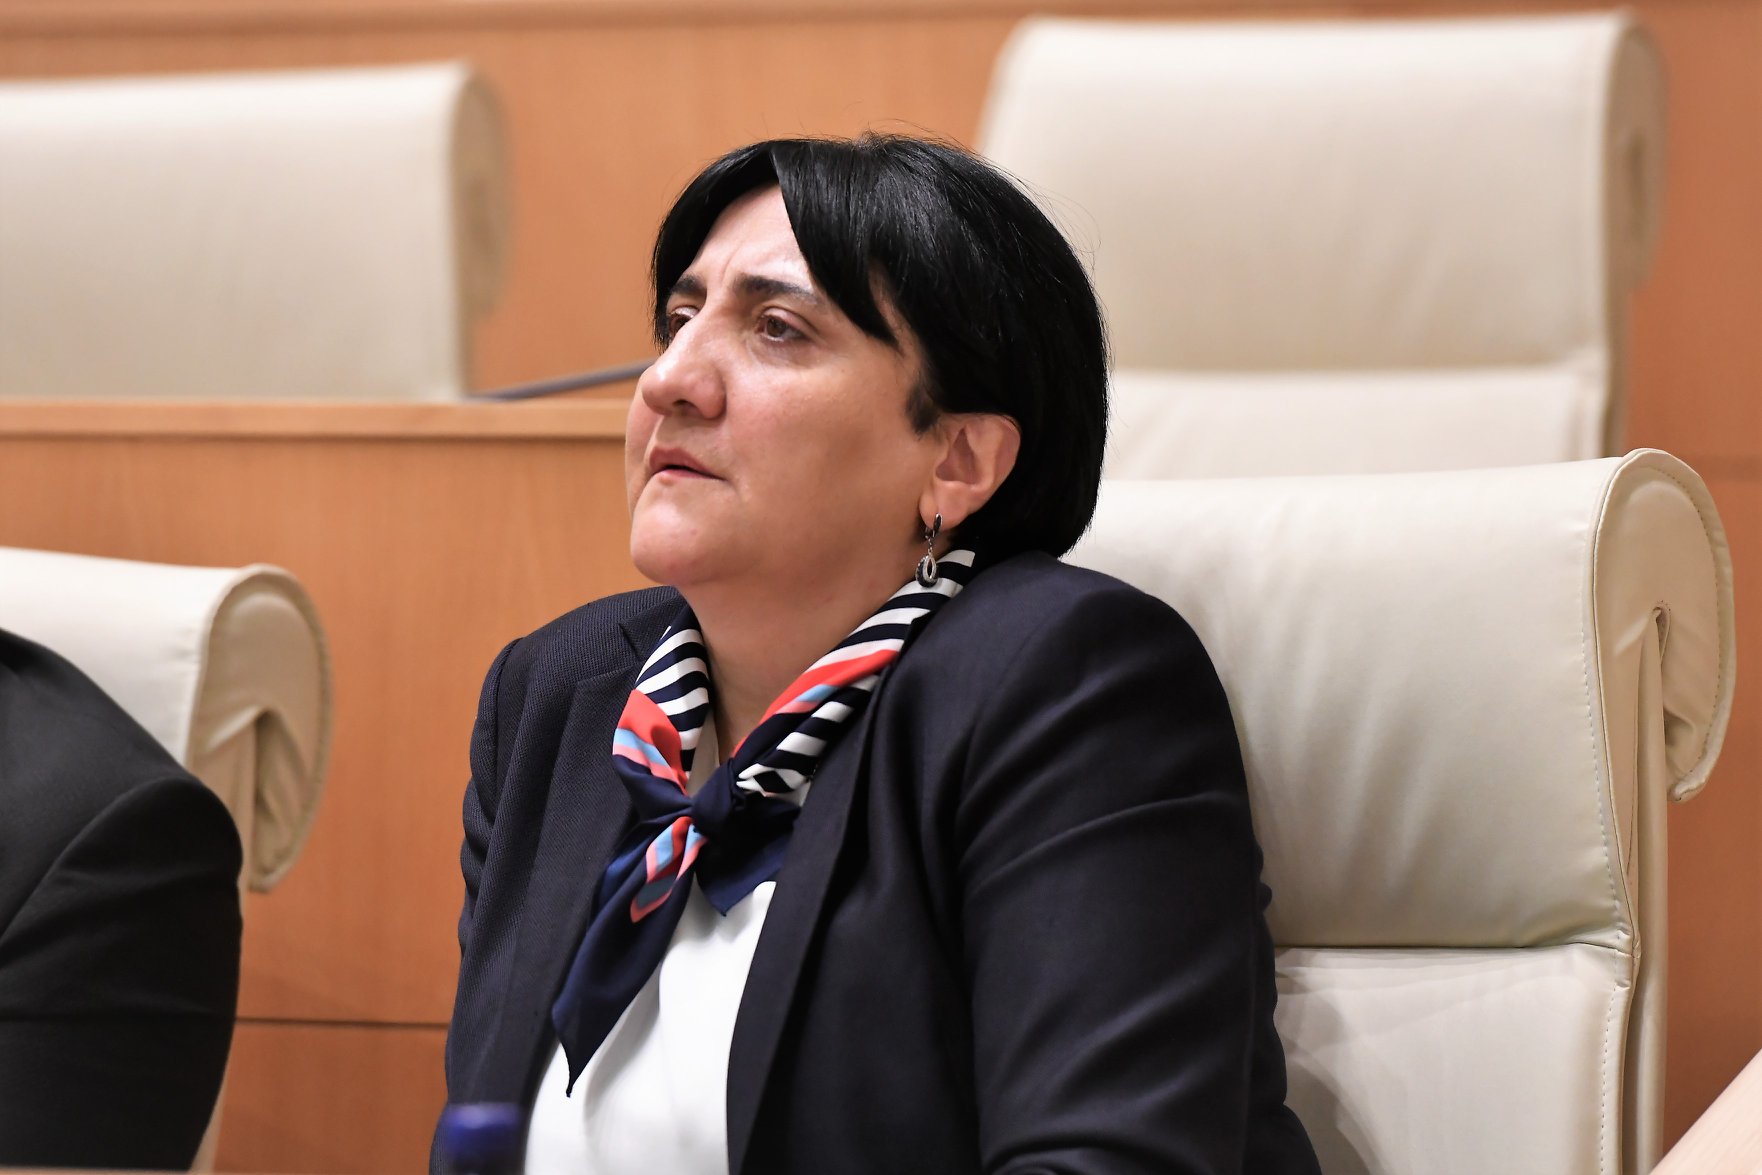 Irma Inashvili 7 новости «Альянс патриотов», второй тур, Выборы 2020, Ирма Инашвили